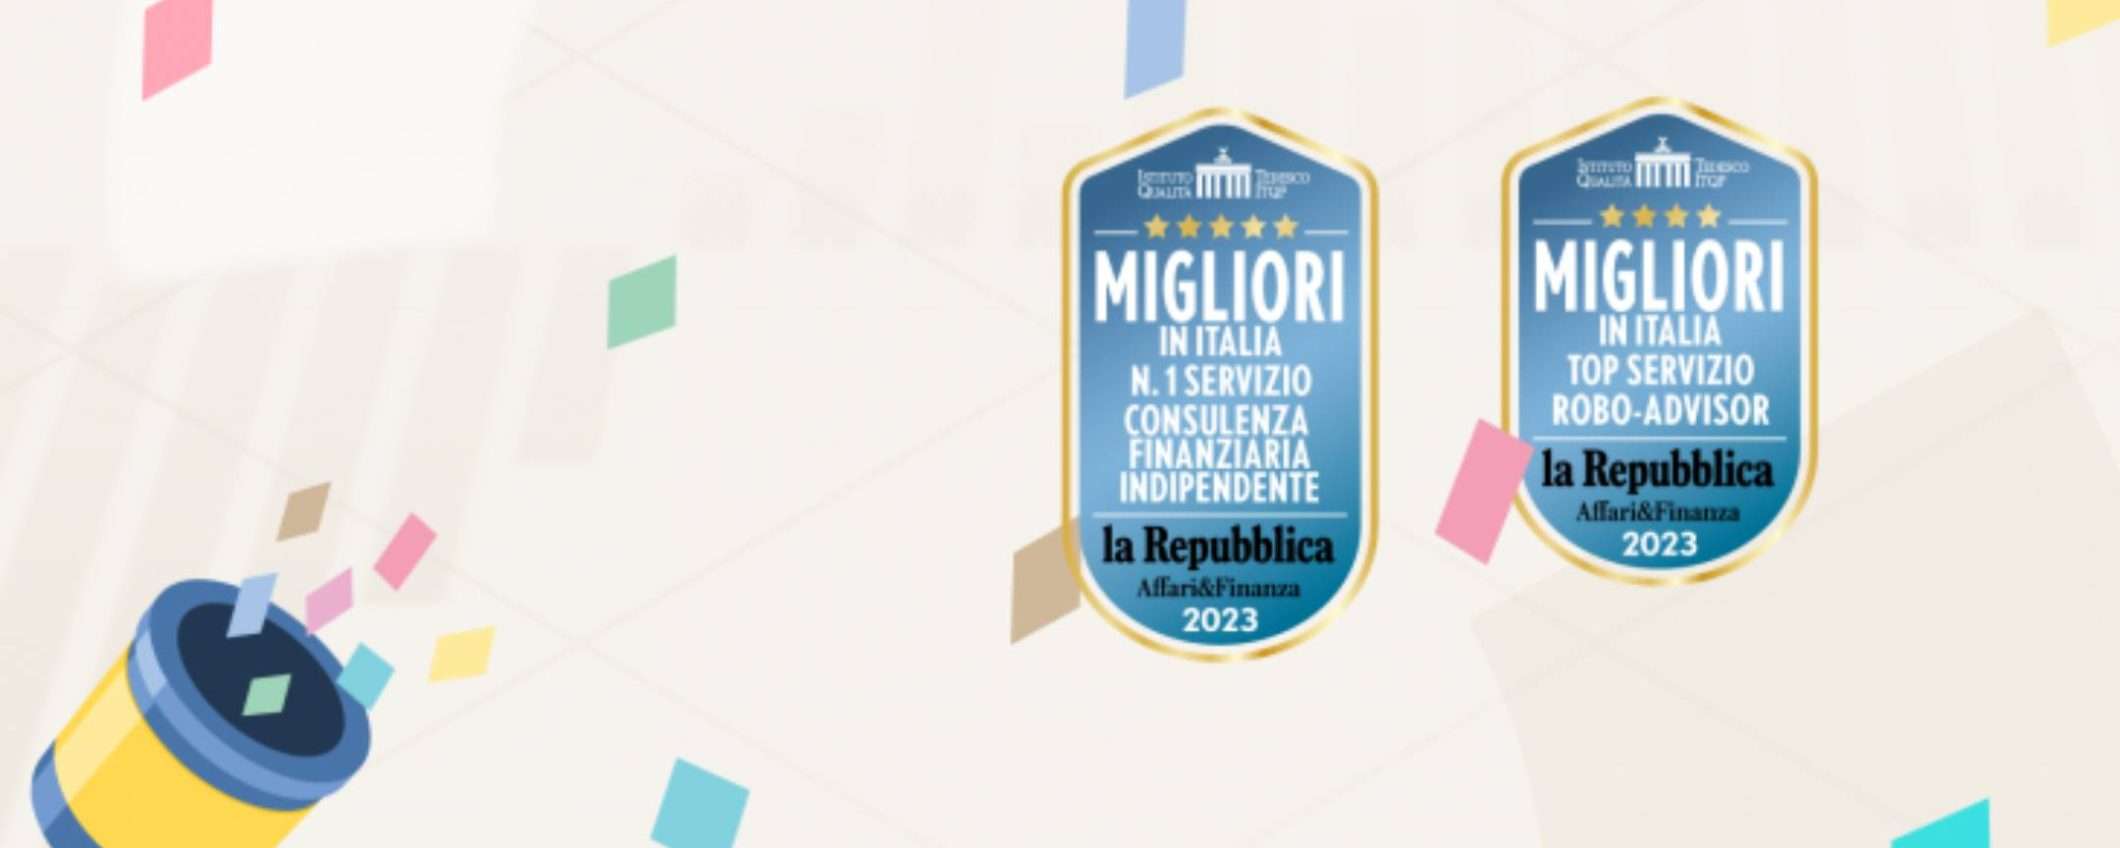 Moneyfarm premiato “Miglior Consulente Finanziario Indipendente d’Italia”.